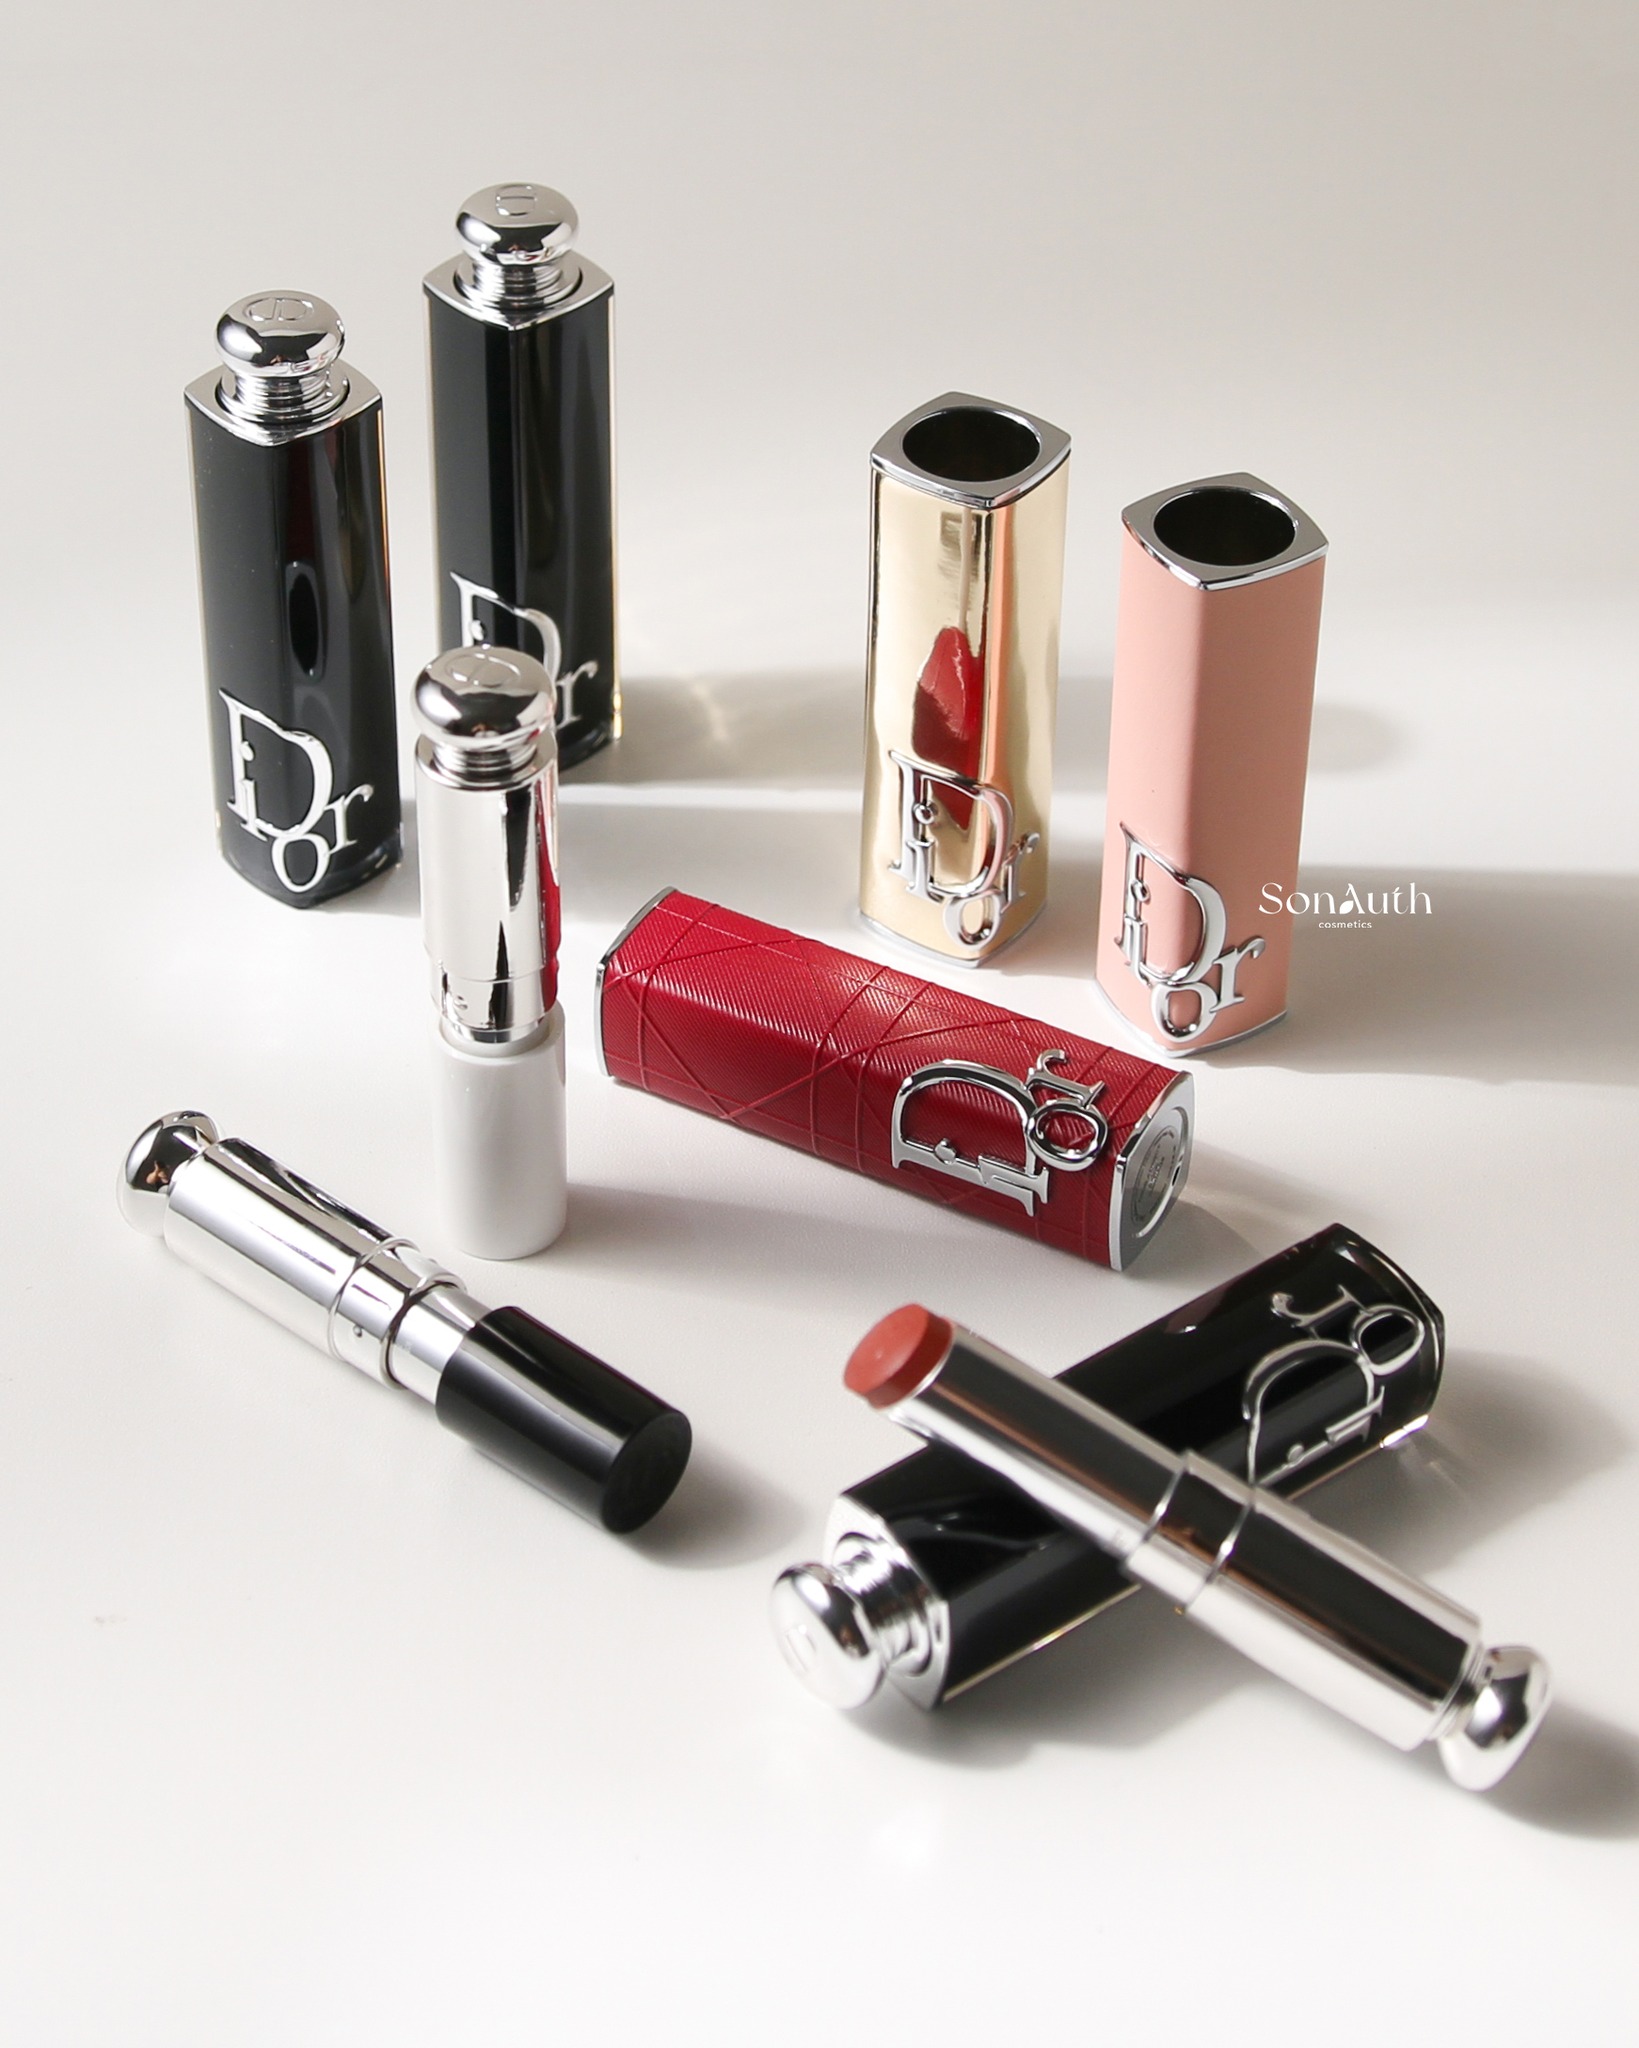 Vỏ Son Thay Thế Dior Addict Lipstick Case